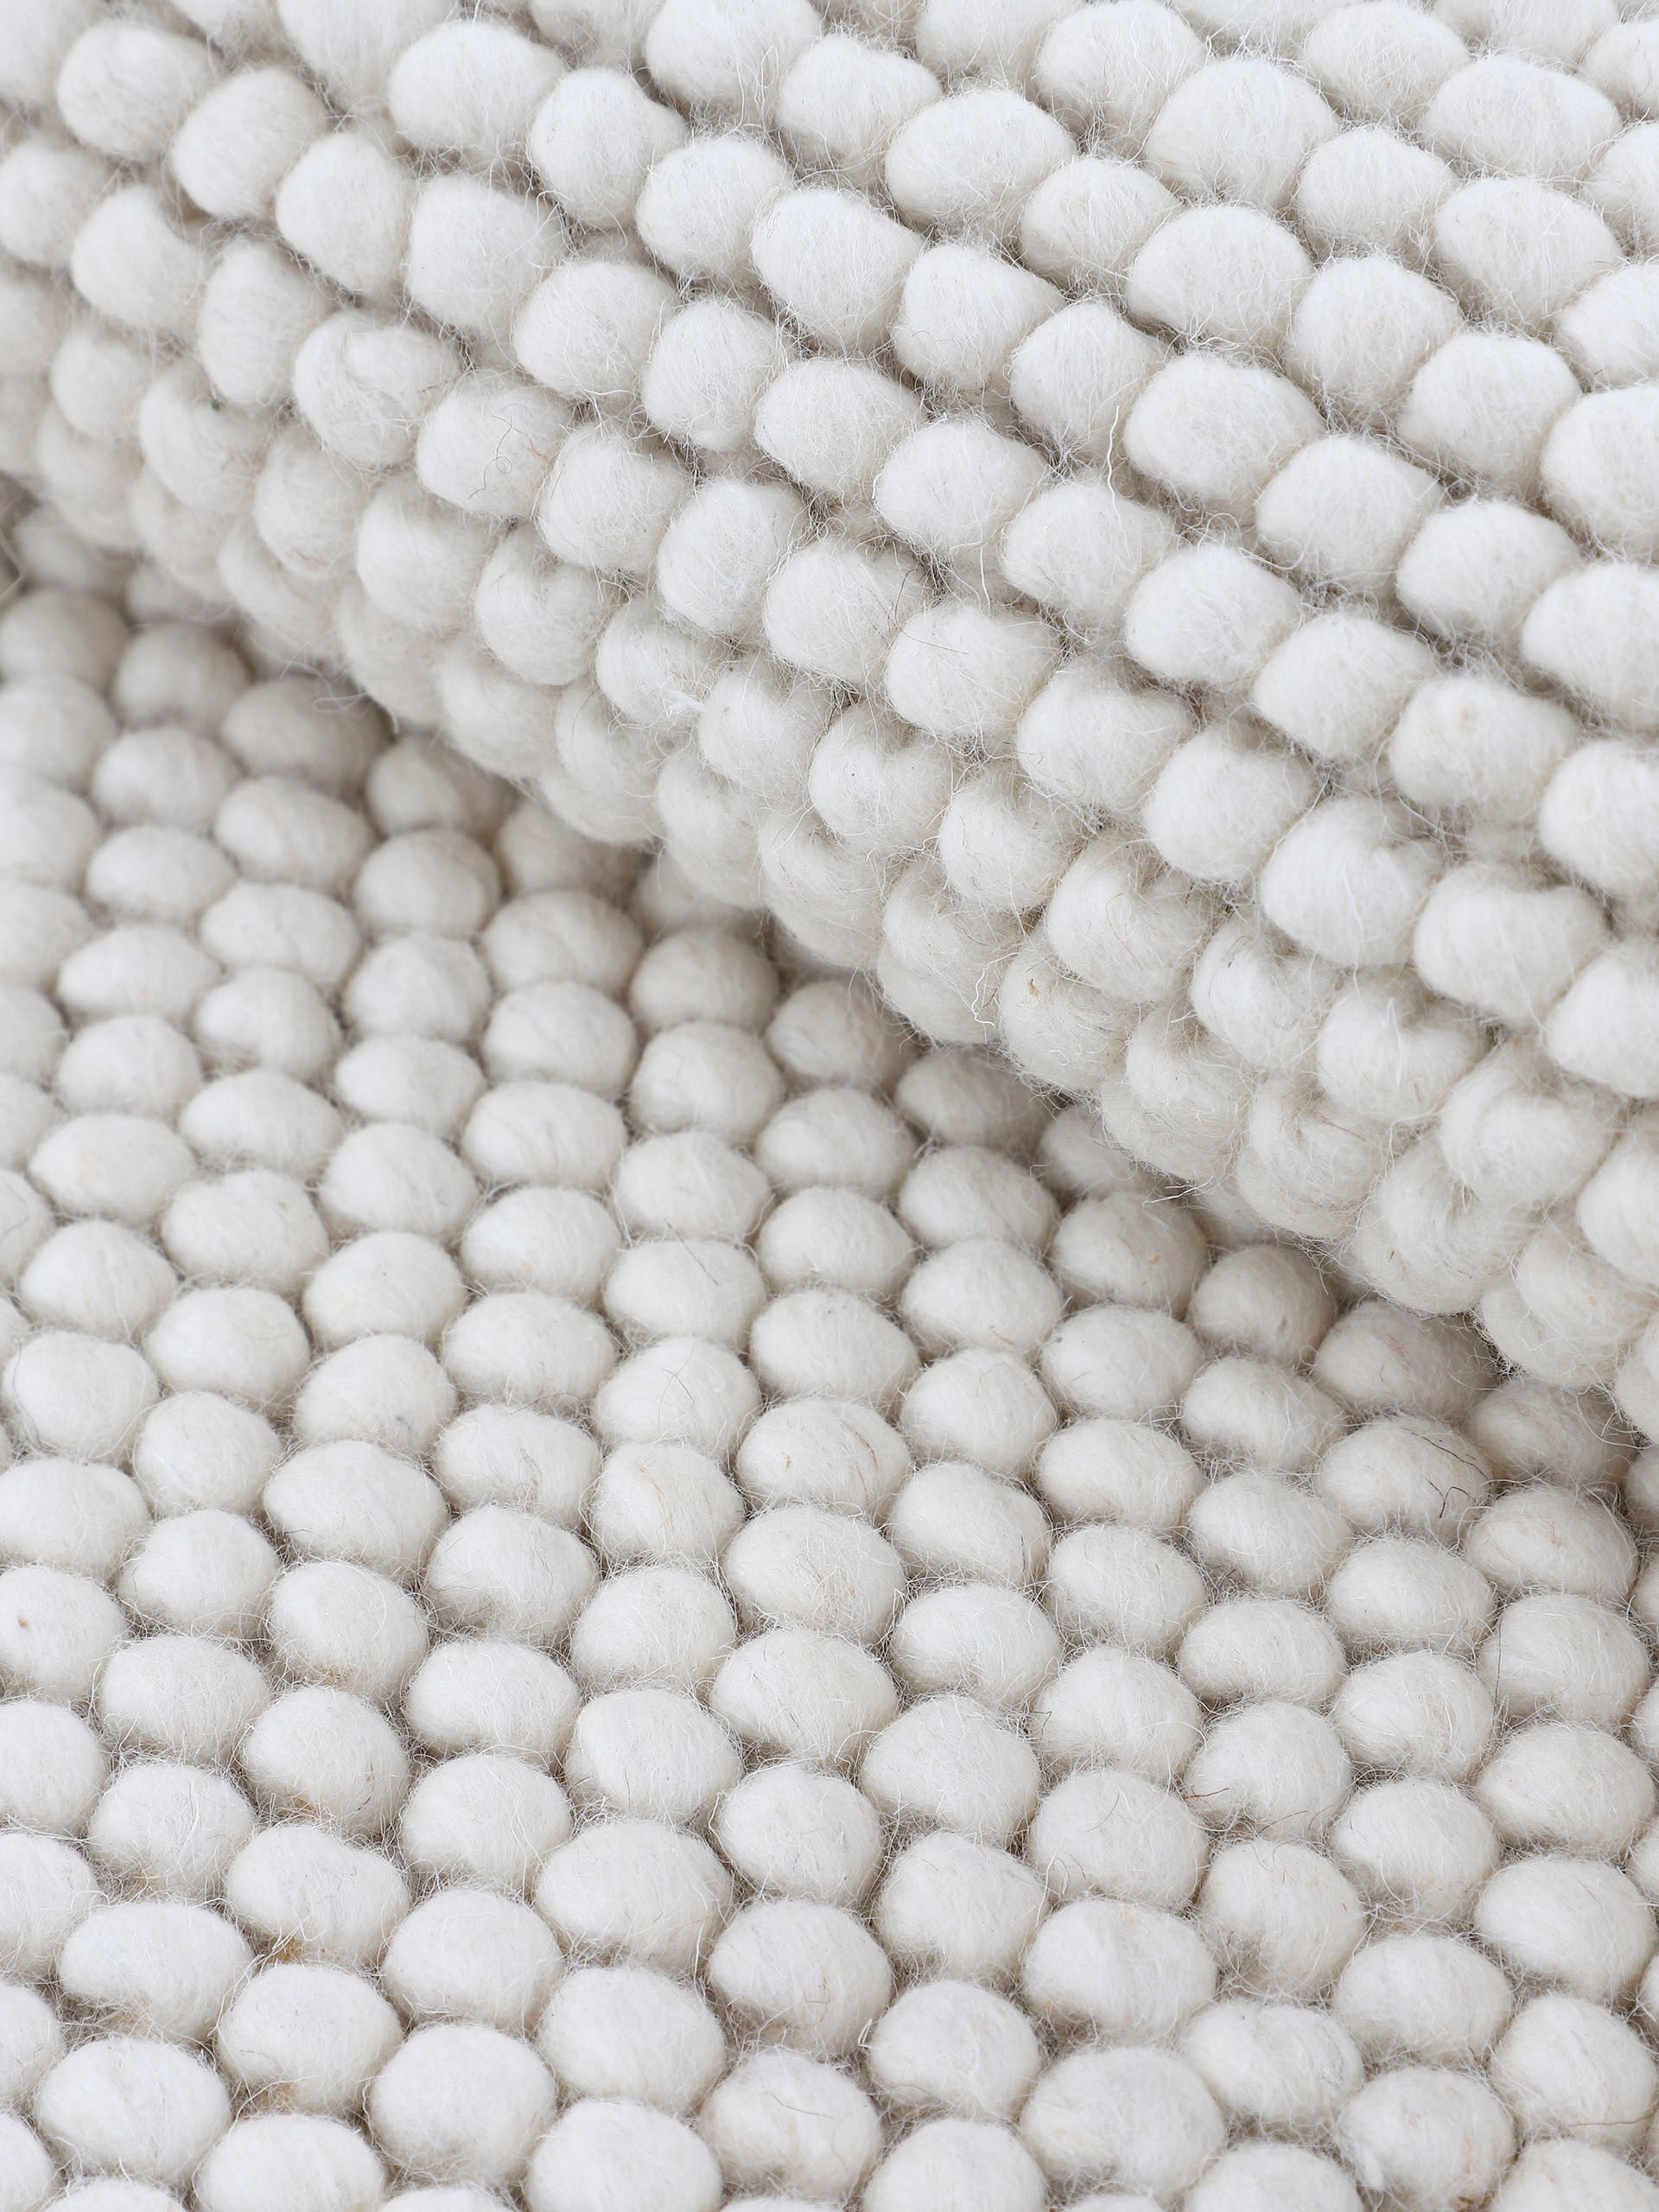 carpetfine Teppich »Calo«, rechteckig, Handweb Teppich, Uni Farben, meliert, handgewebt, 70% Wolle